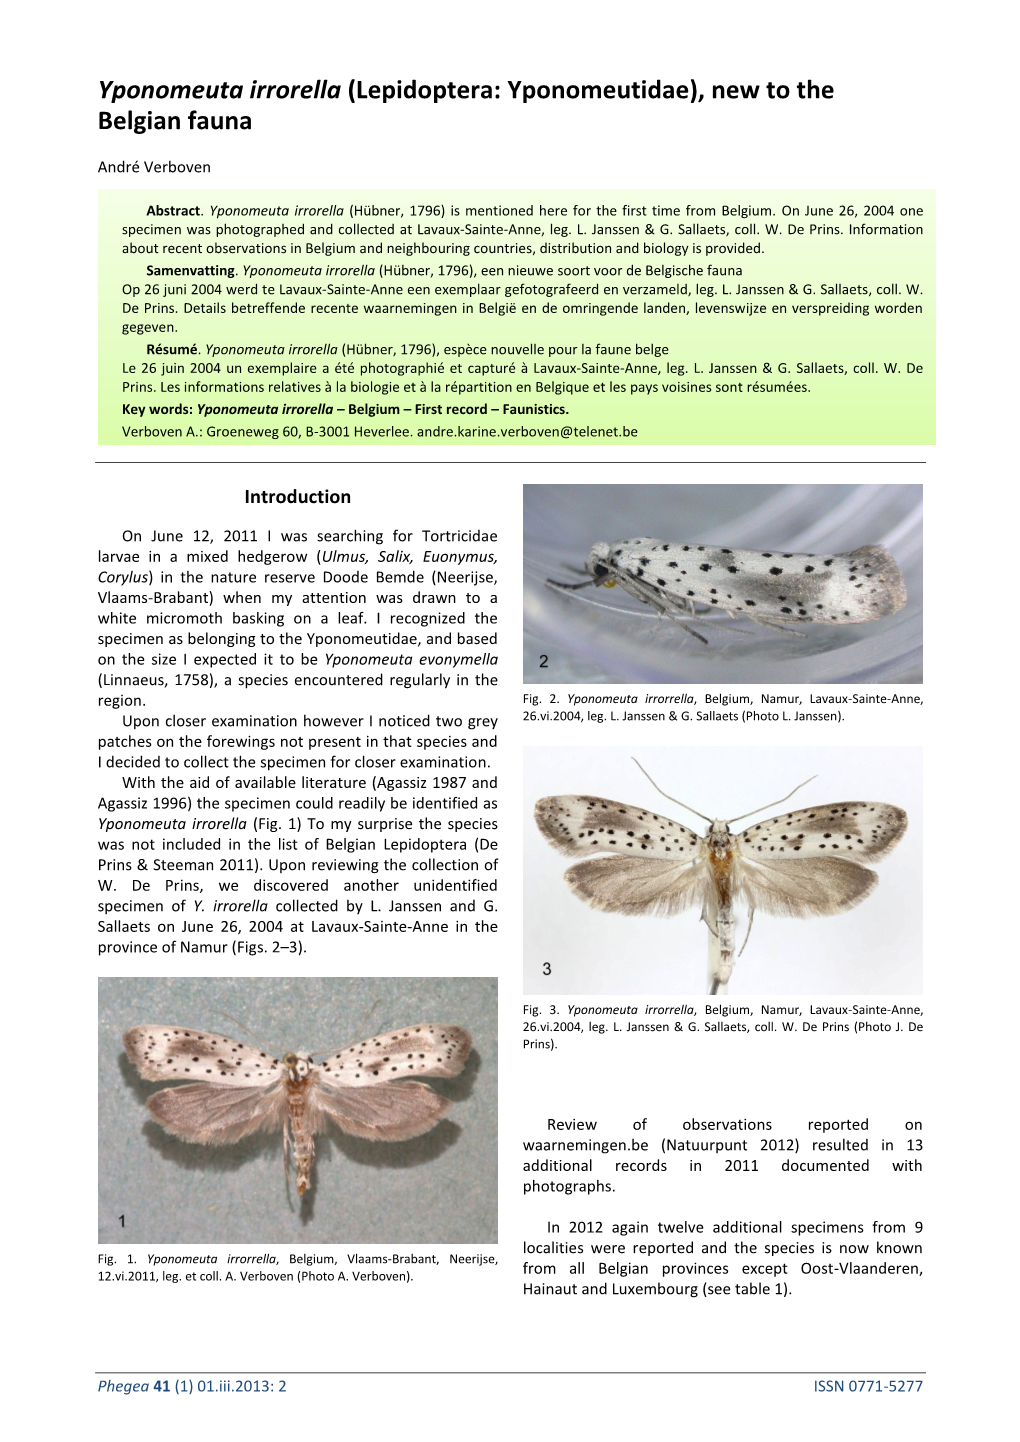 Yponomeuta Irrorella (Lepidoptera: Yponomeutidae), New to the Belgian Fauna